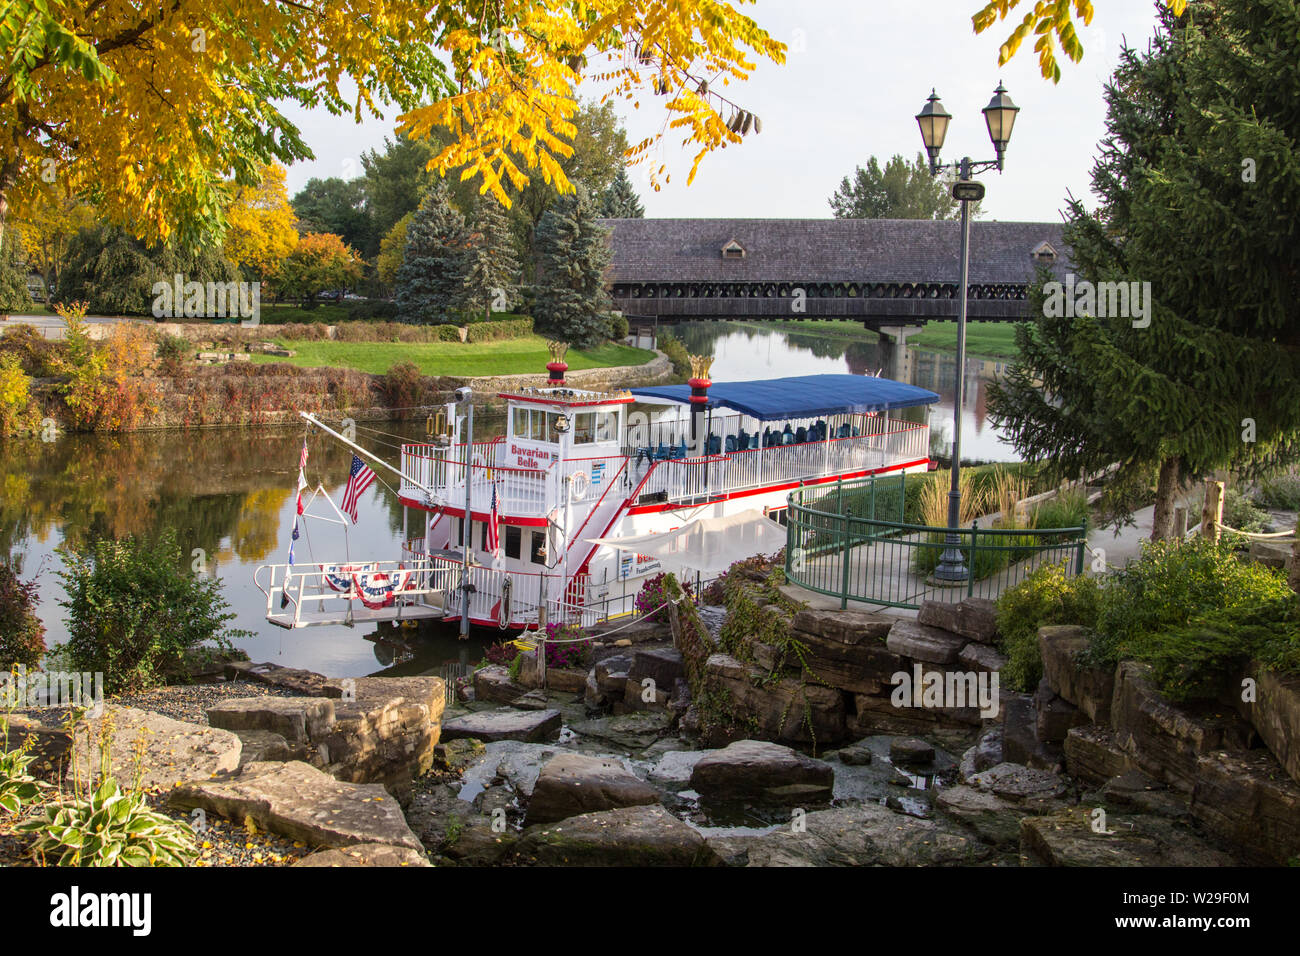 Frankenmuth, Michigan, USA - 9 octobre 2018 : Le bavarois Belle riverboat propose des visites et dîners croisière sur la rivière Cass à Frankenmuth. Banque D'Images